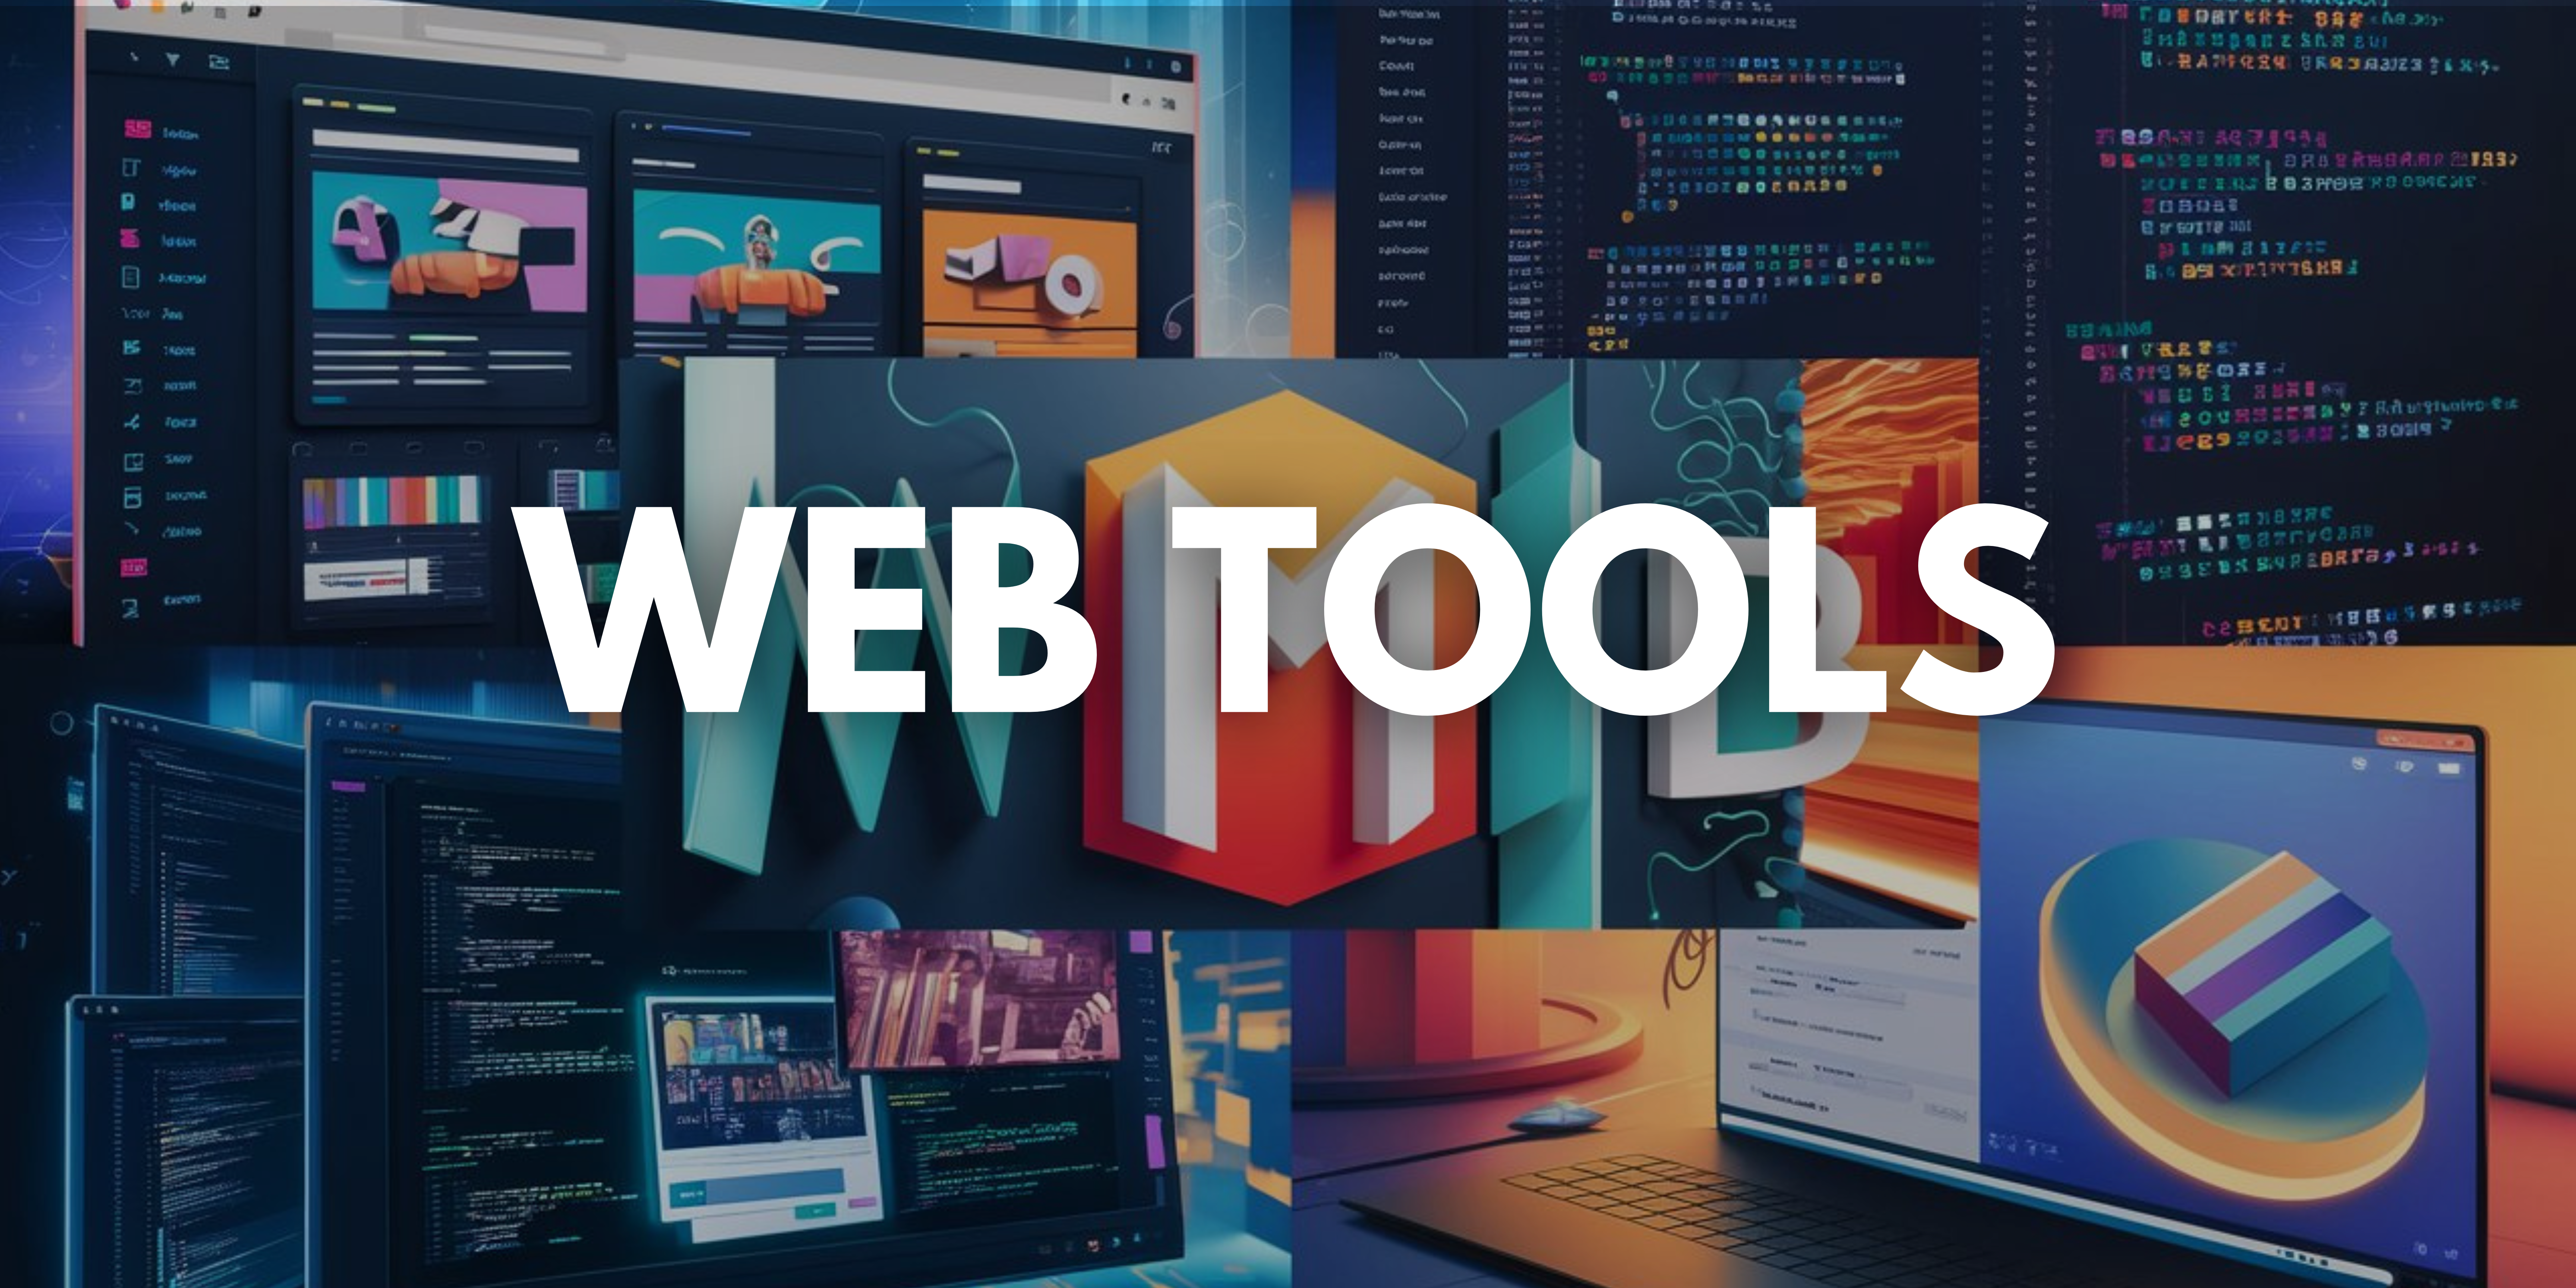 Web Tools